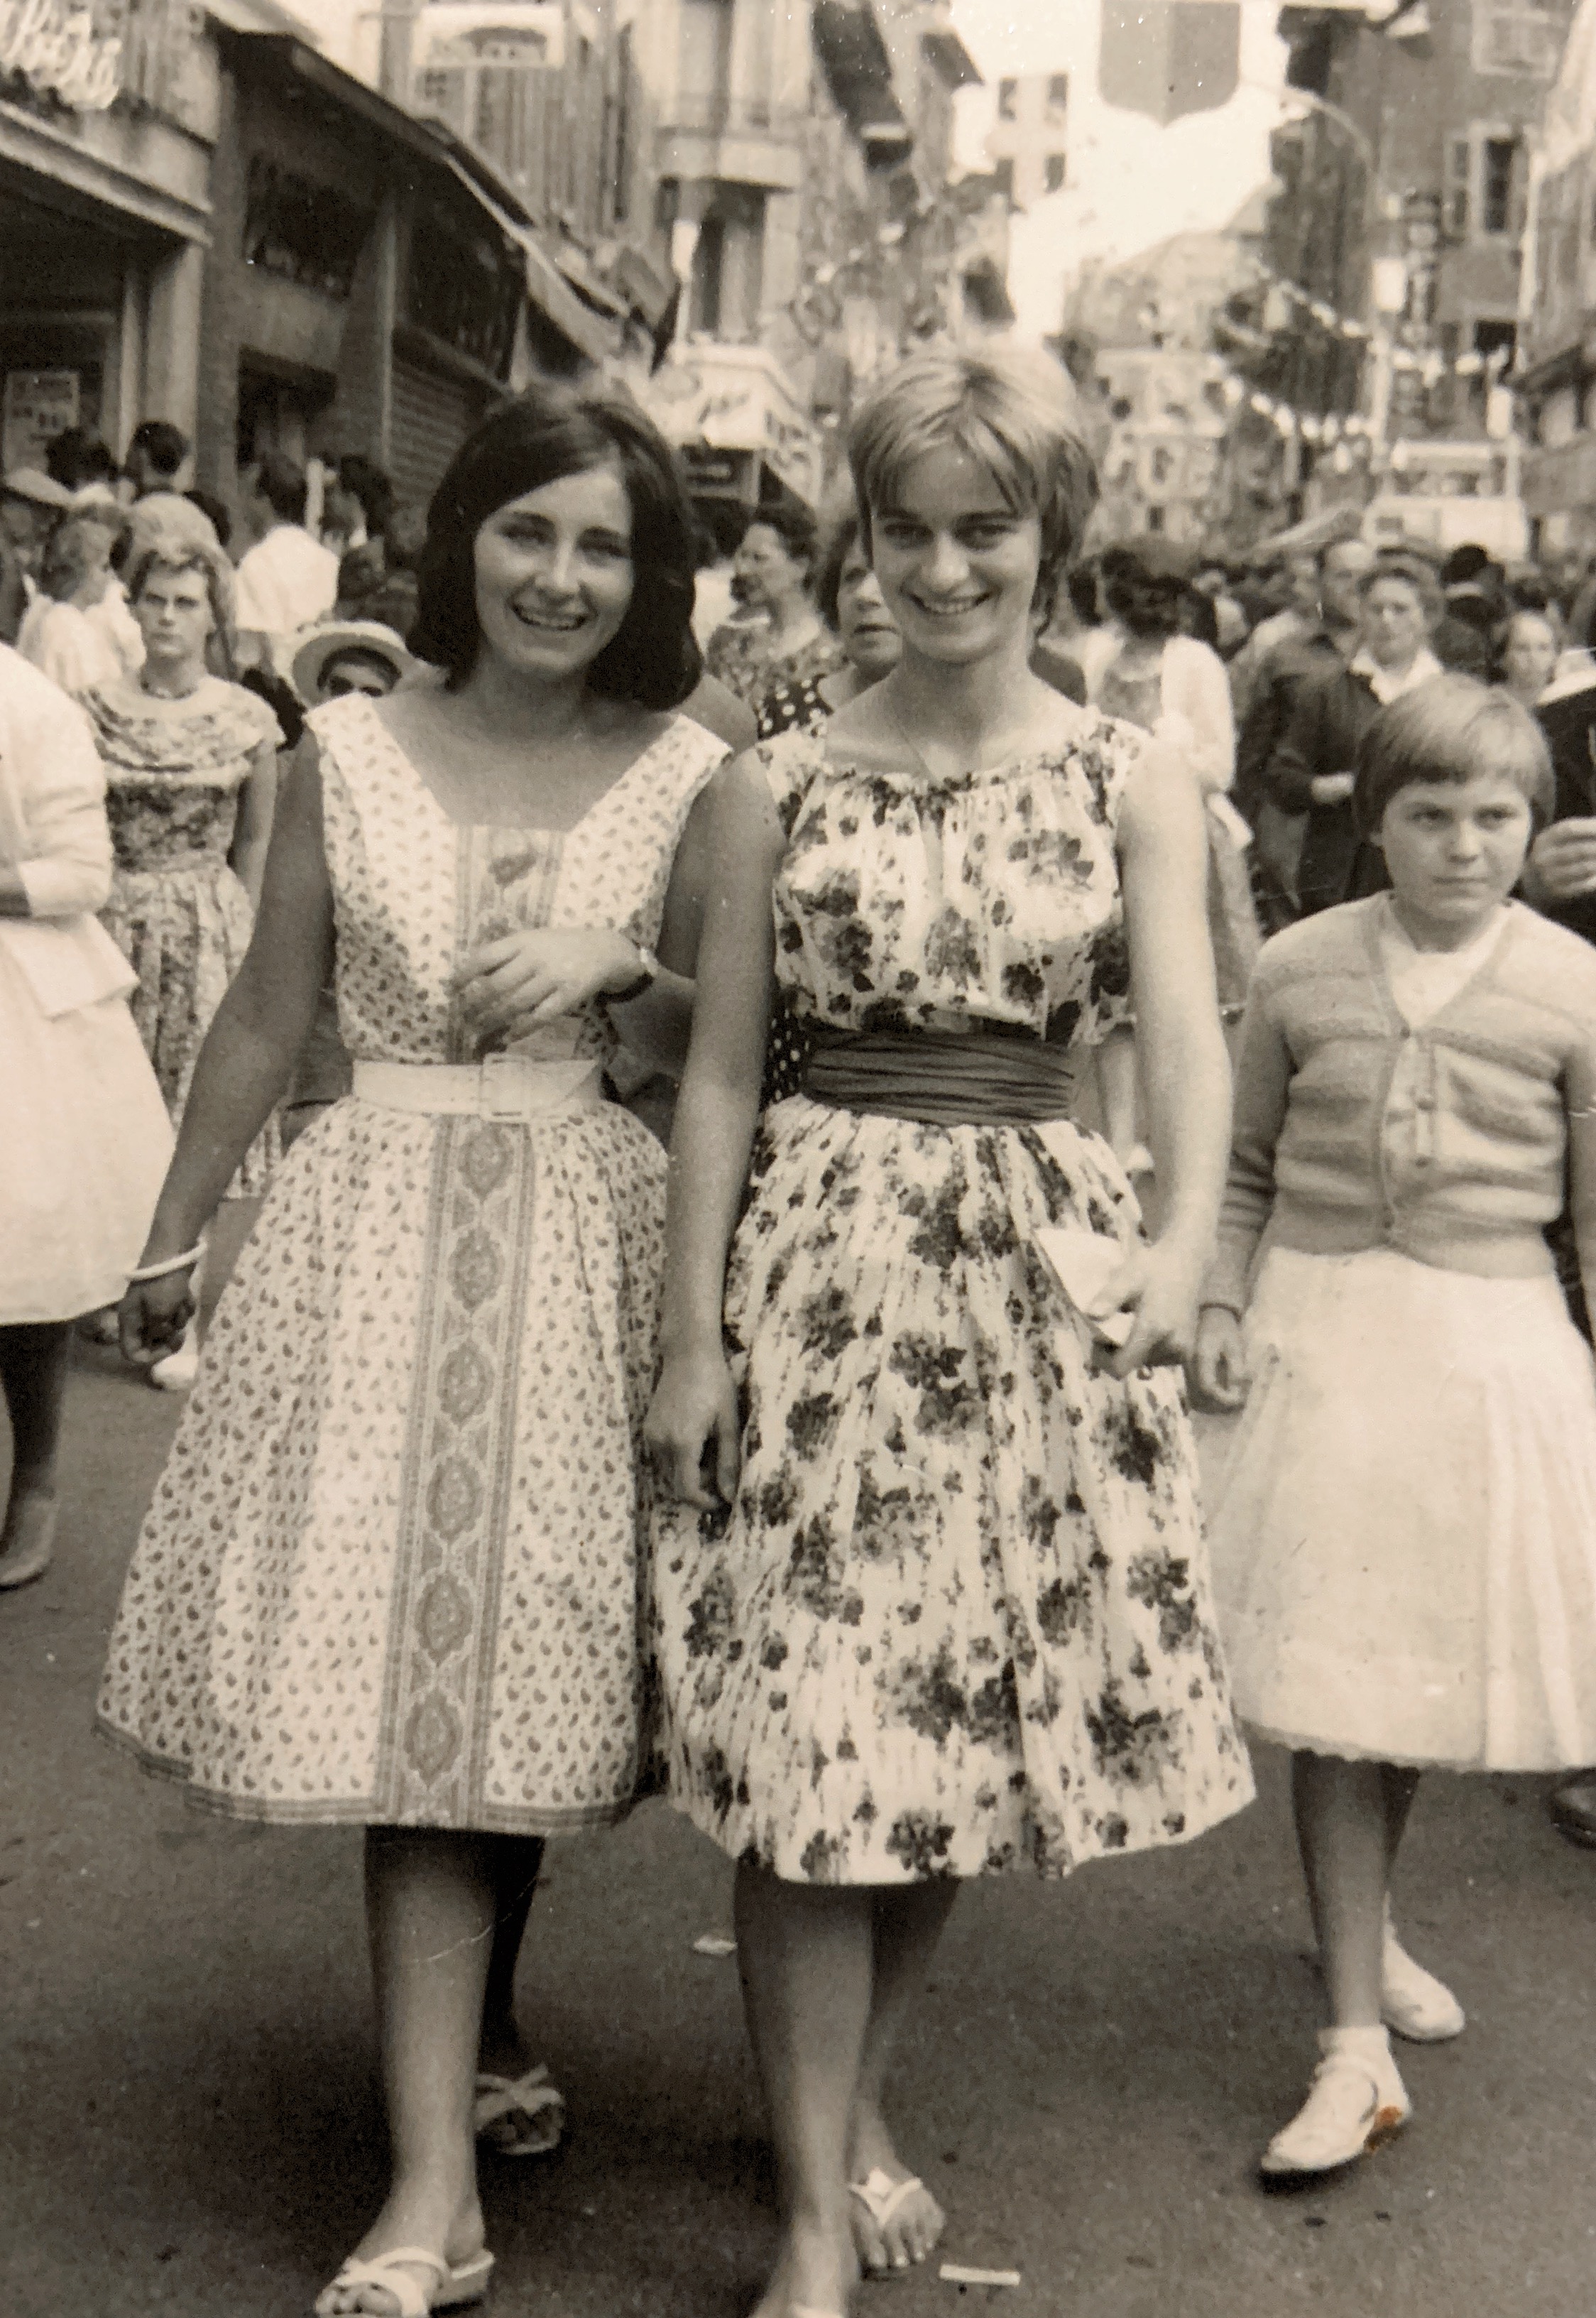 Thonon les Bains approx 1959-1960
Anne Marie Decorzent & Michelle Vernaz 